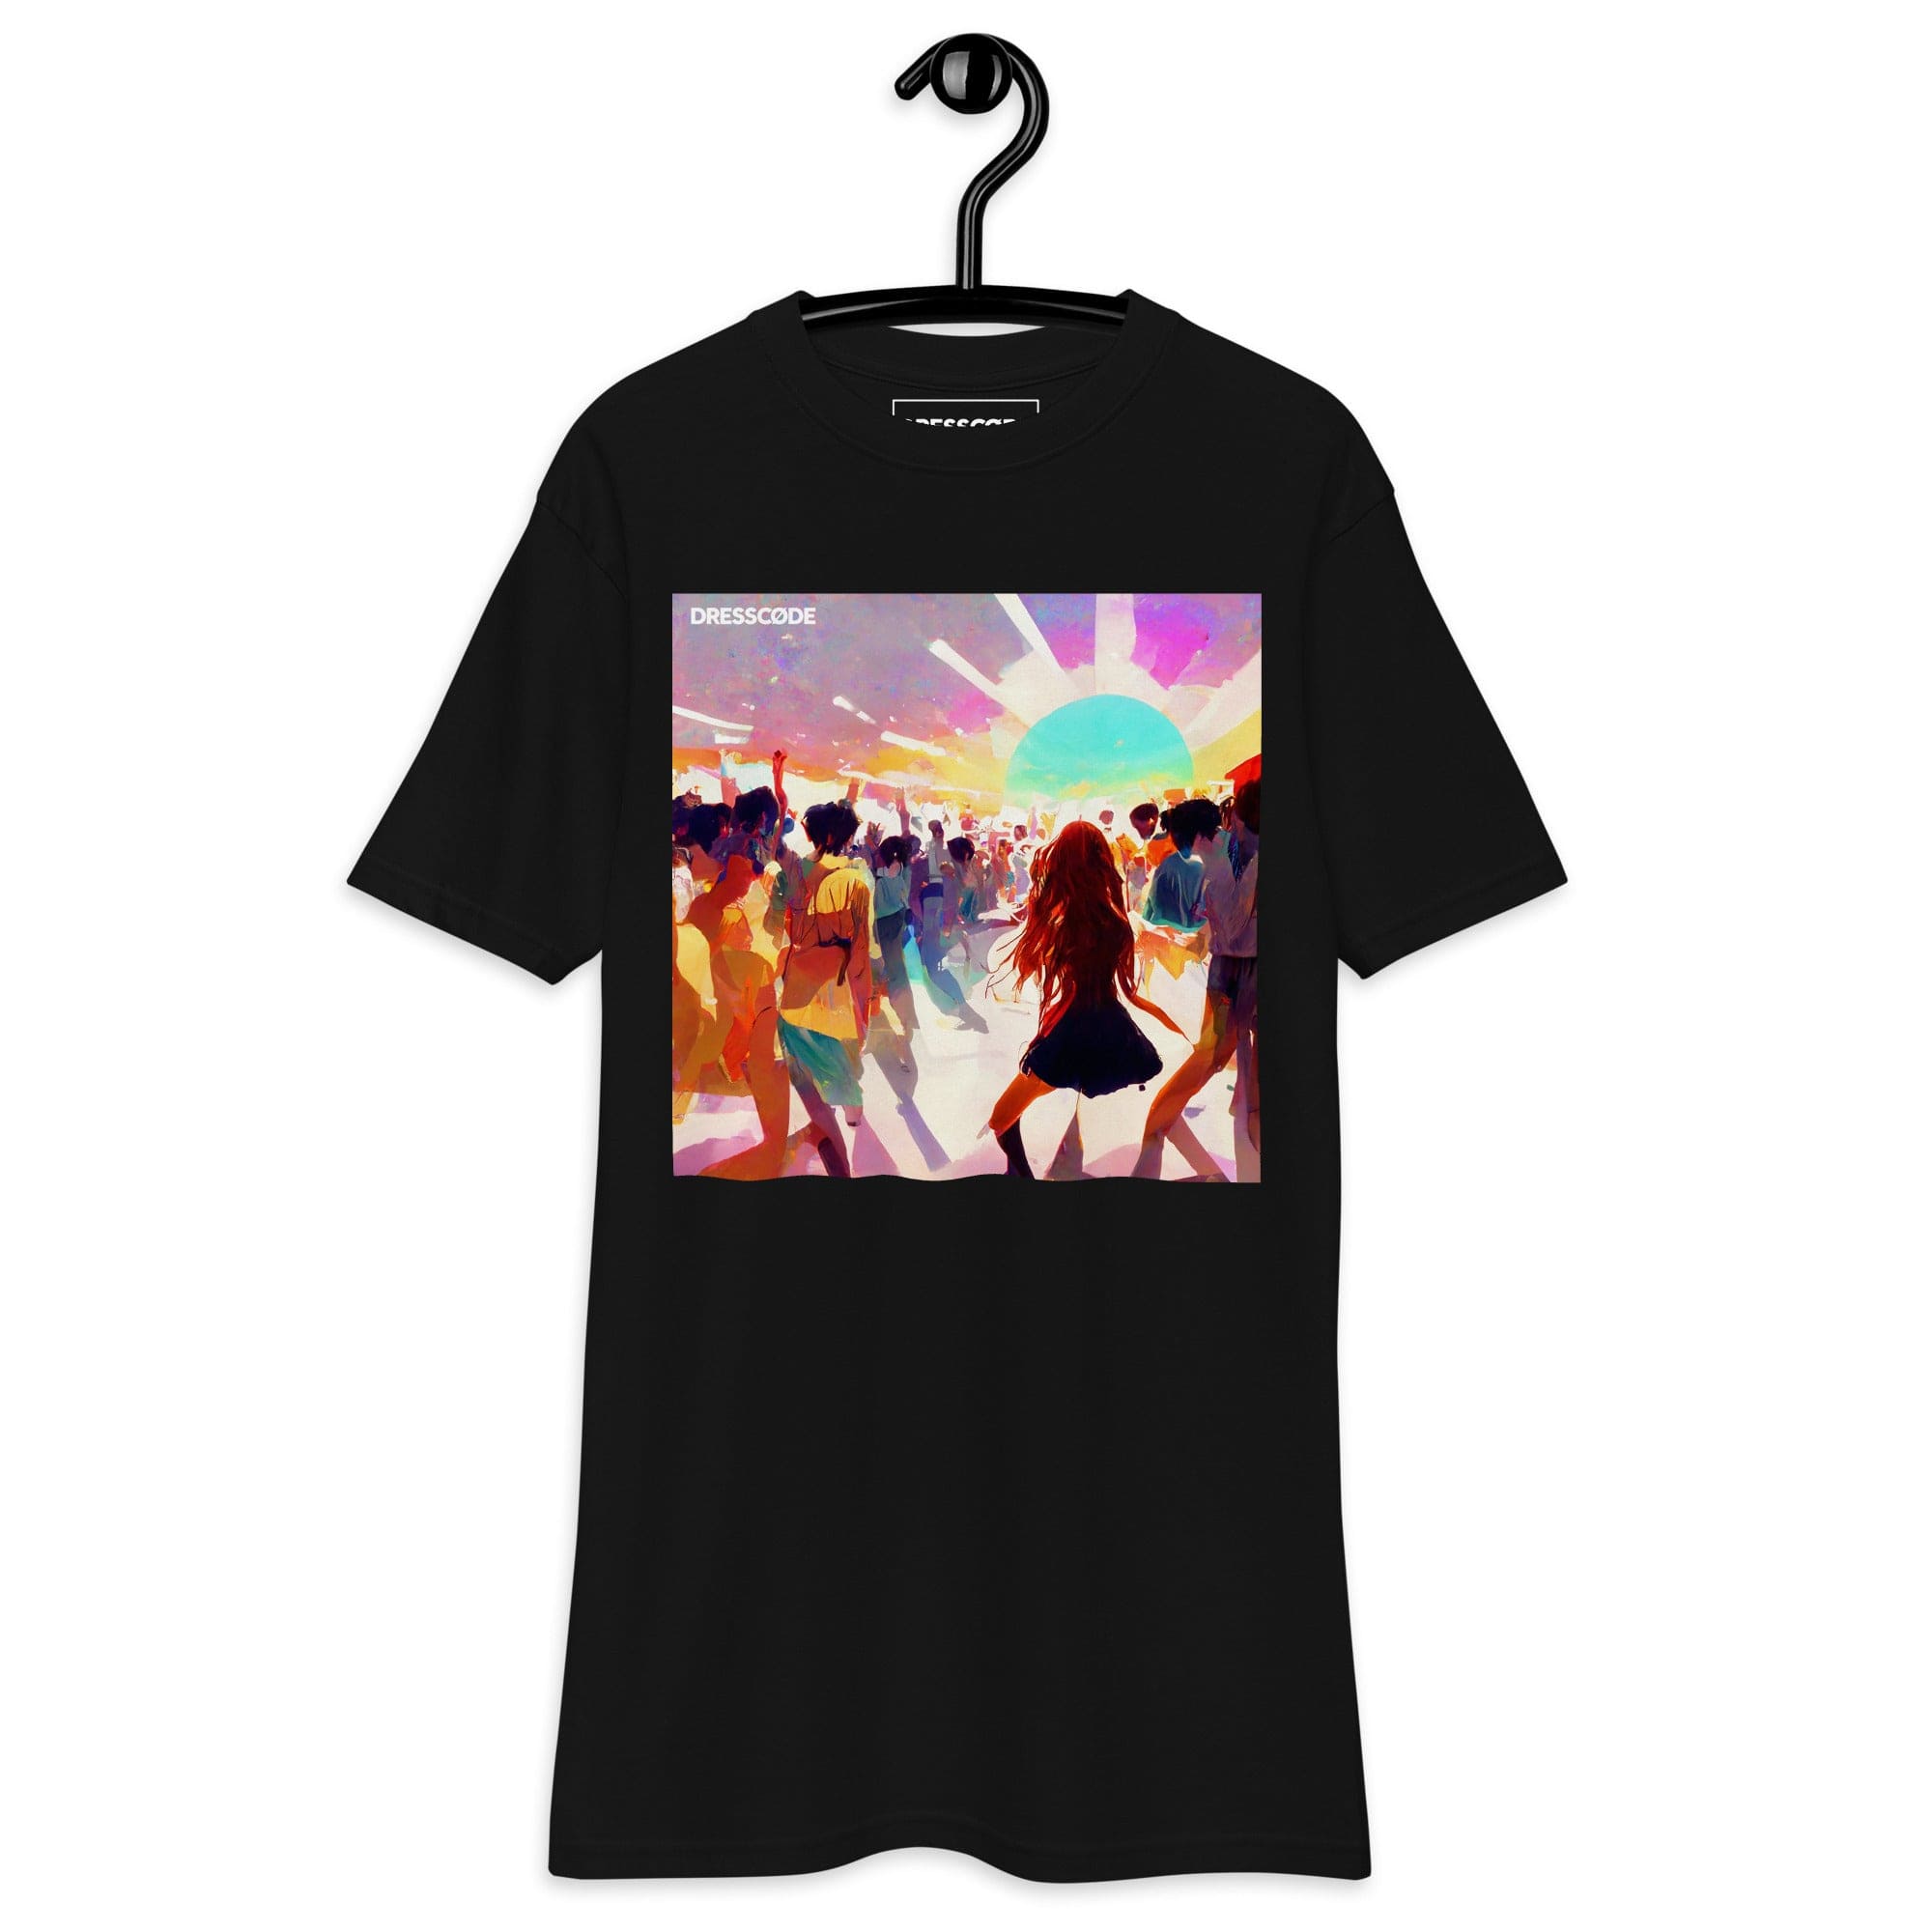 DRESSCODE T-Shirt S Dream Sequence 4